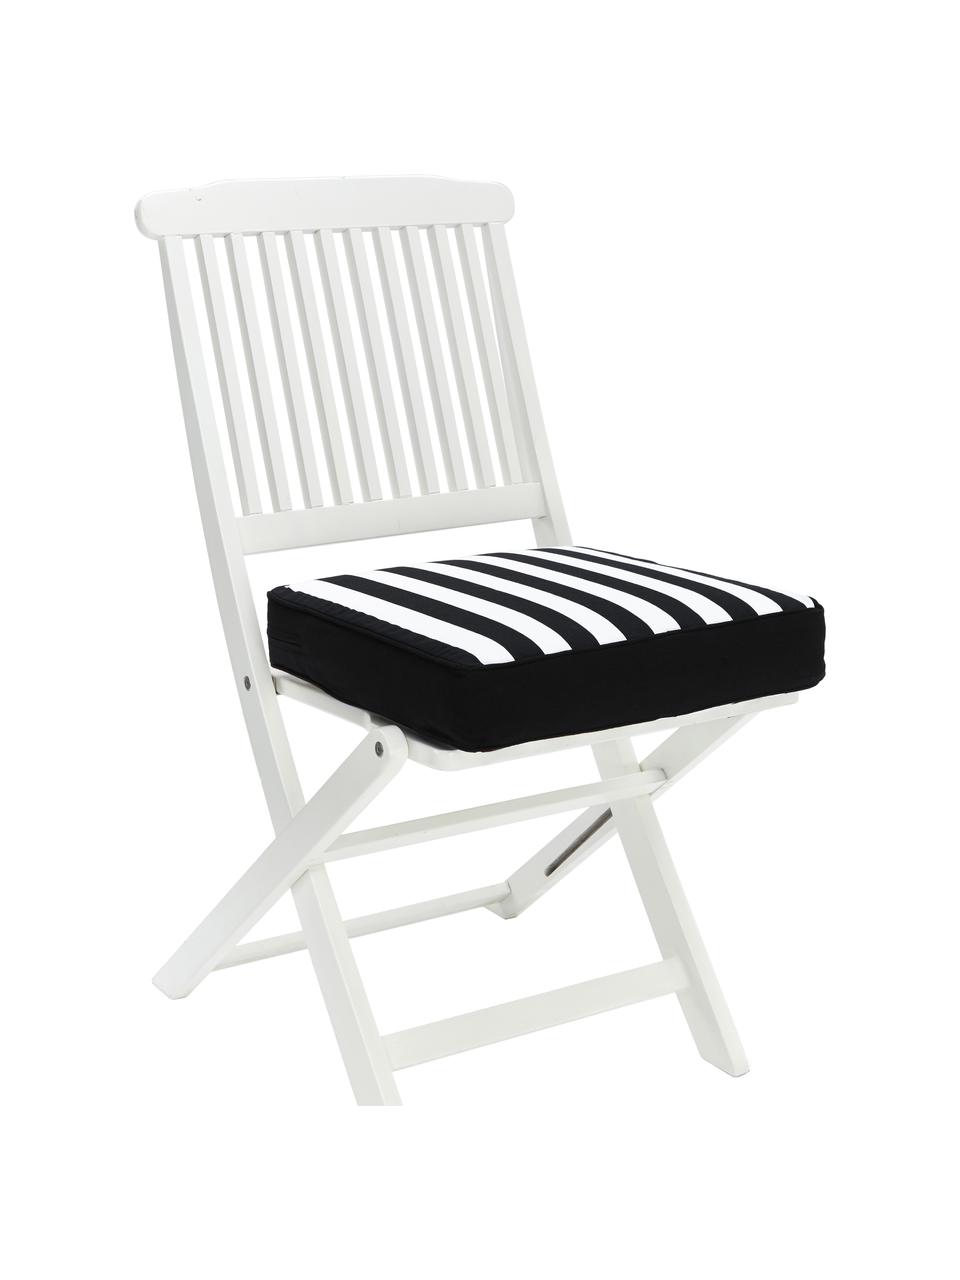 Vysoký pruhovaný podsedák na židli Timon, Černá, bílá, Š 40 cm, D 40 cm